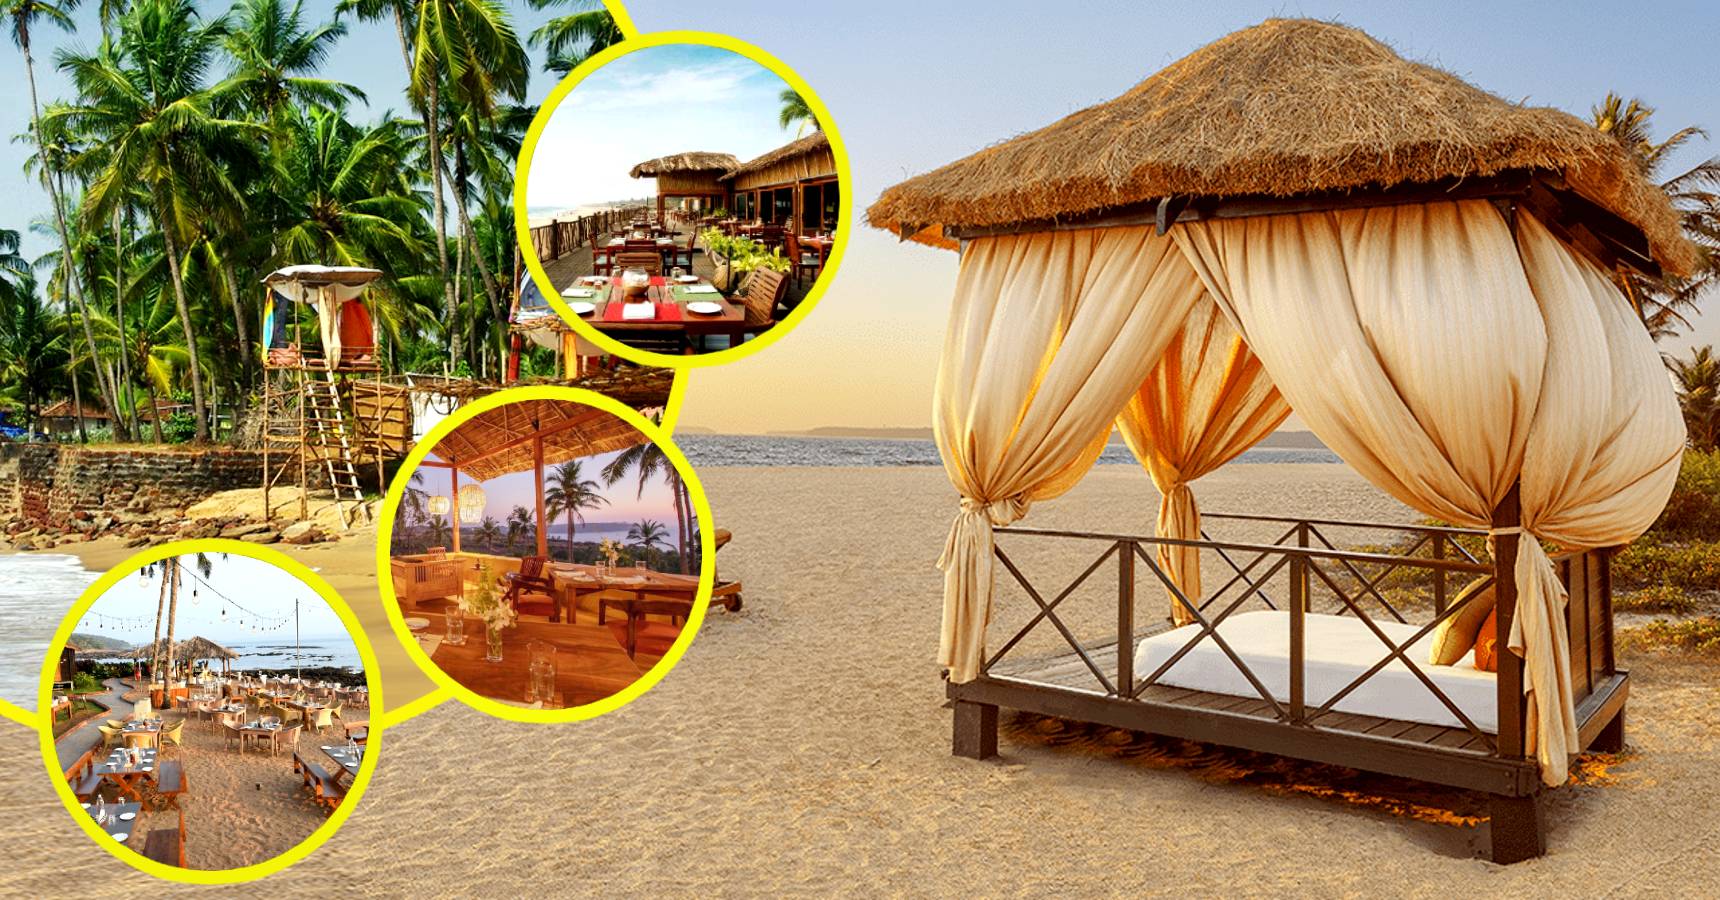 গোয়াতে কম বাজেটে হোটেল : 5 BUdget hotels in Goa near Sea Beach you must try for Winter Vacation